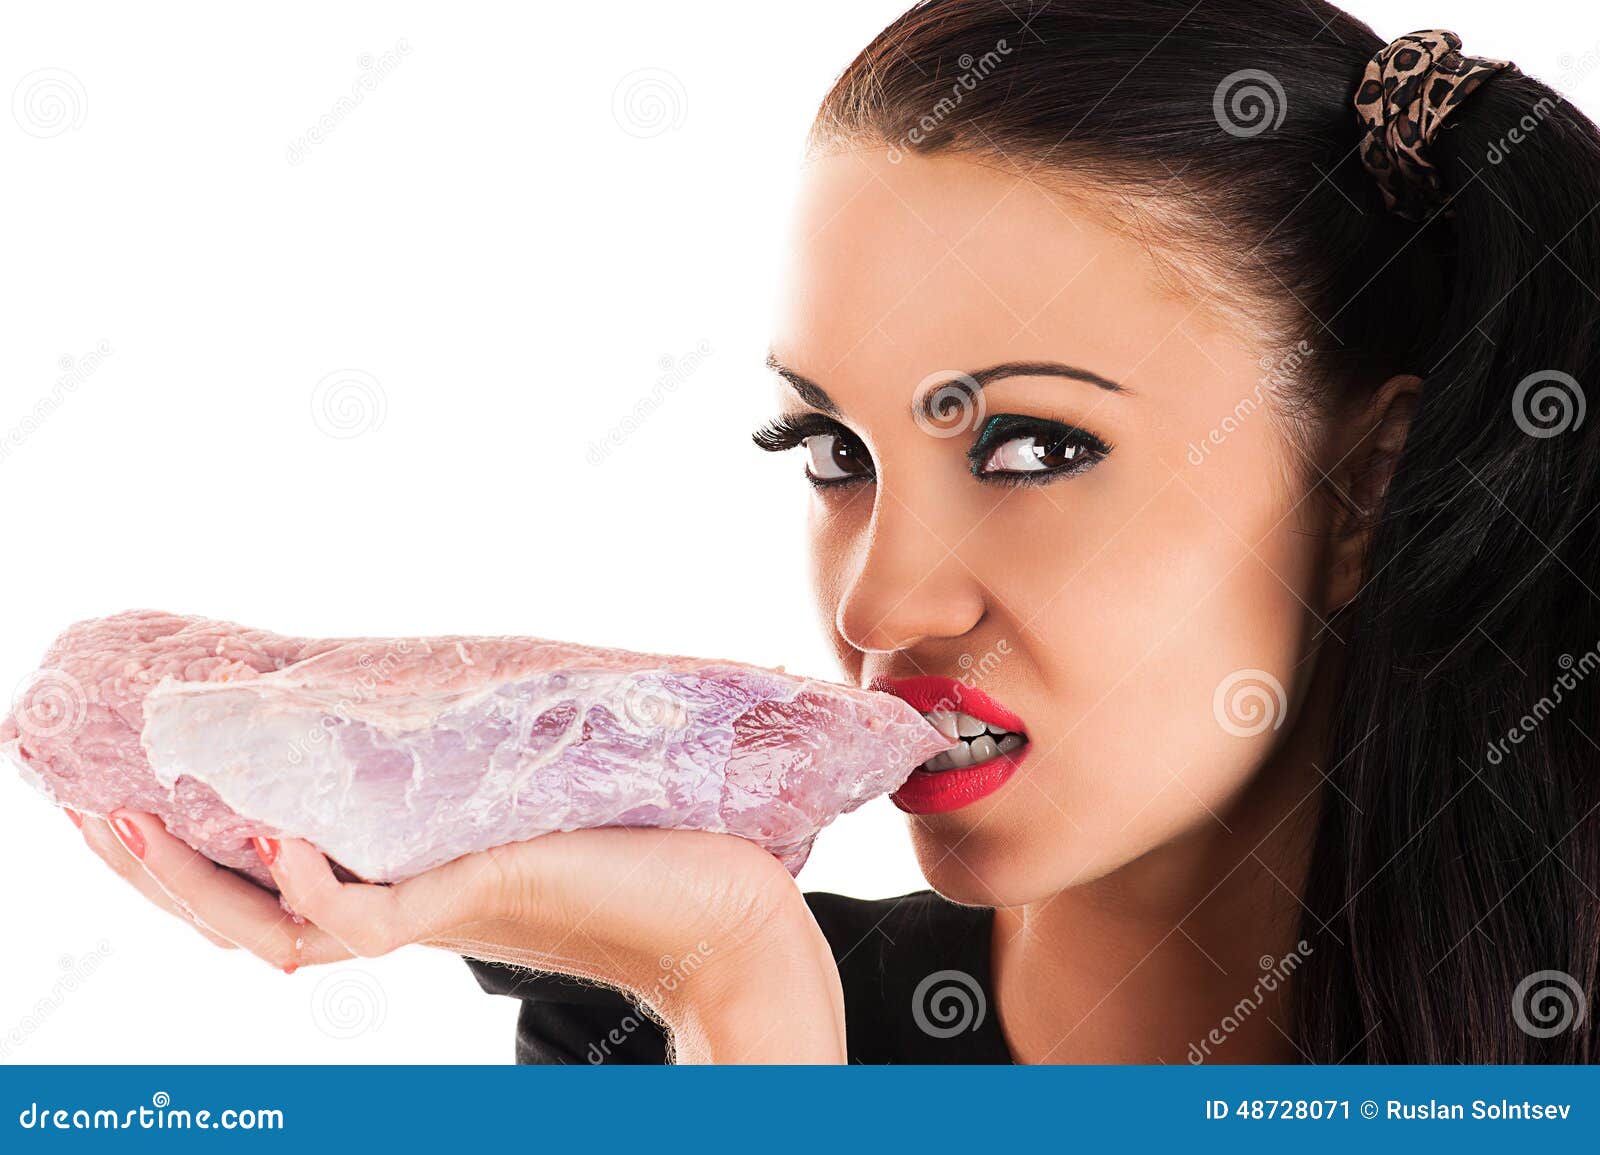 Meat girls. Женщина ест сырое мясо. Девушка ест сырое мясо. Женщина с мясными продуктами.